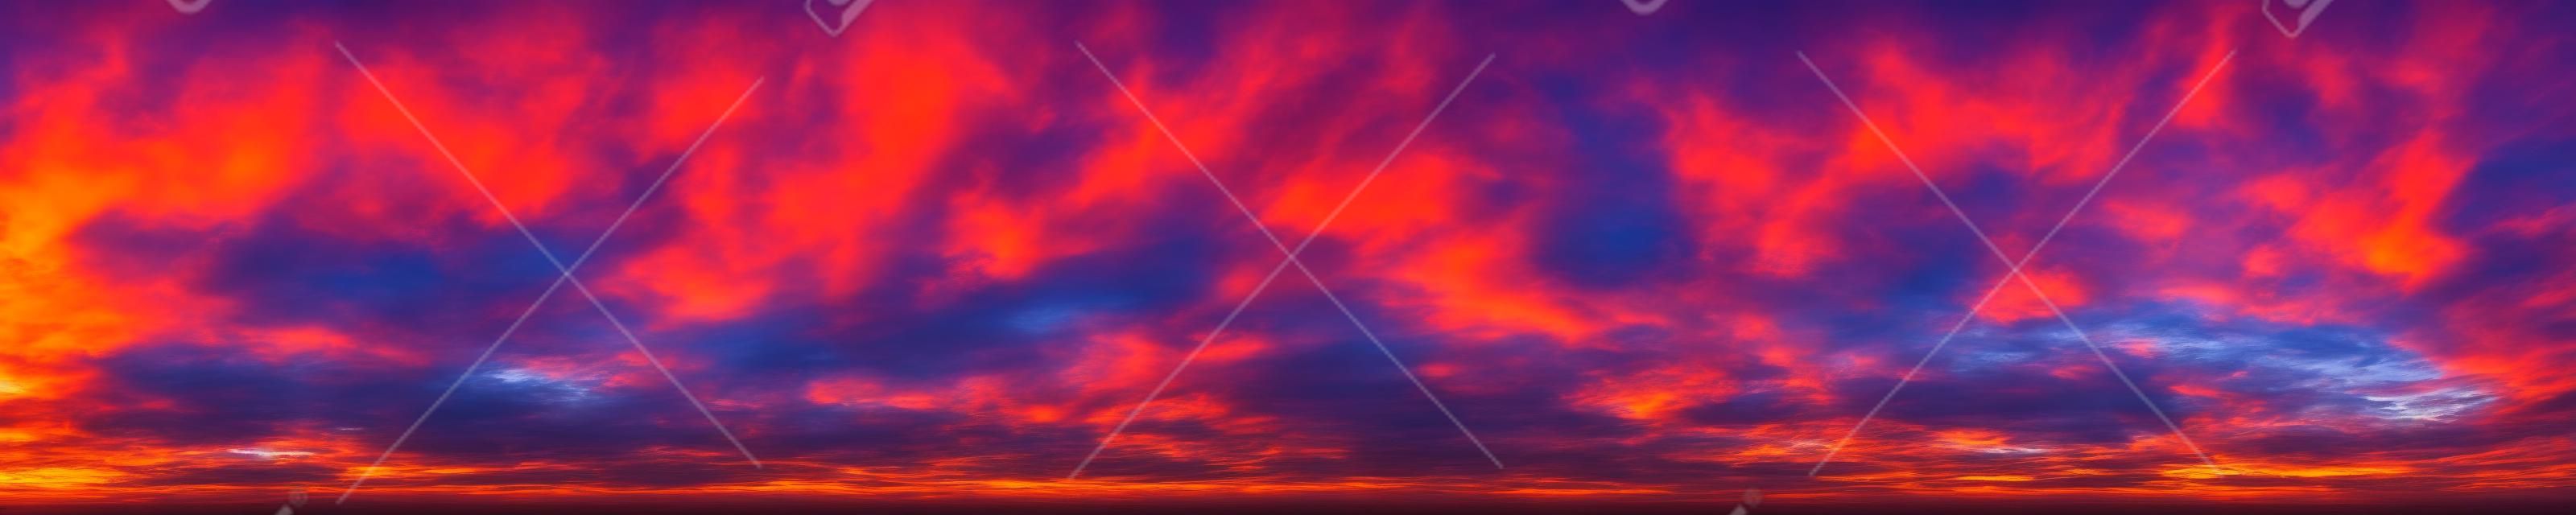 Panorama di colori vibranti drammatici con una bellissima nuvola di alba e tramonto. Immagine panoramica.